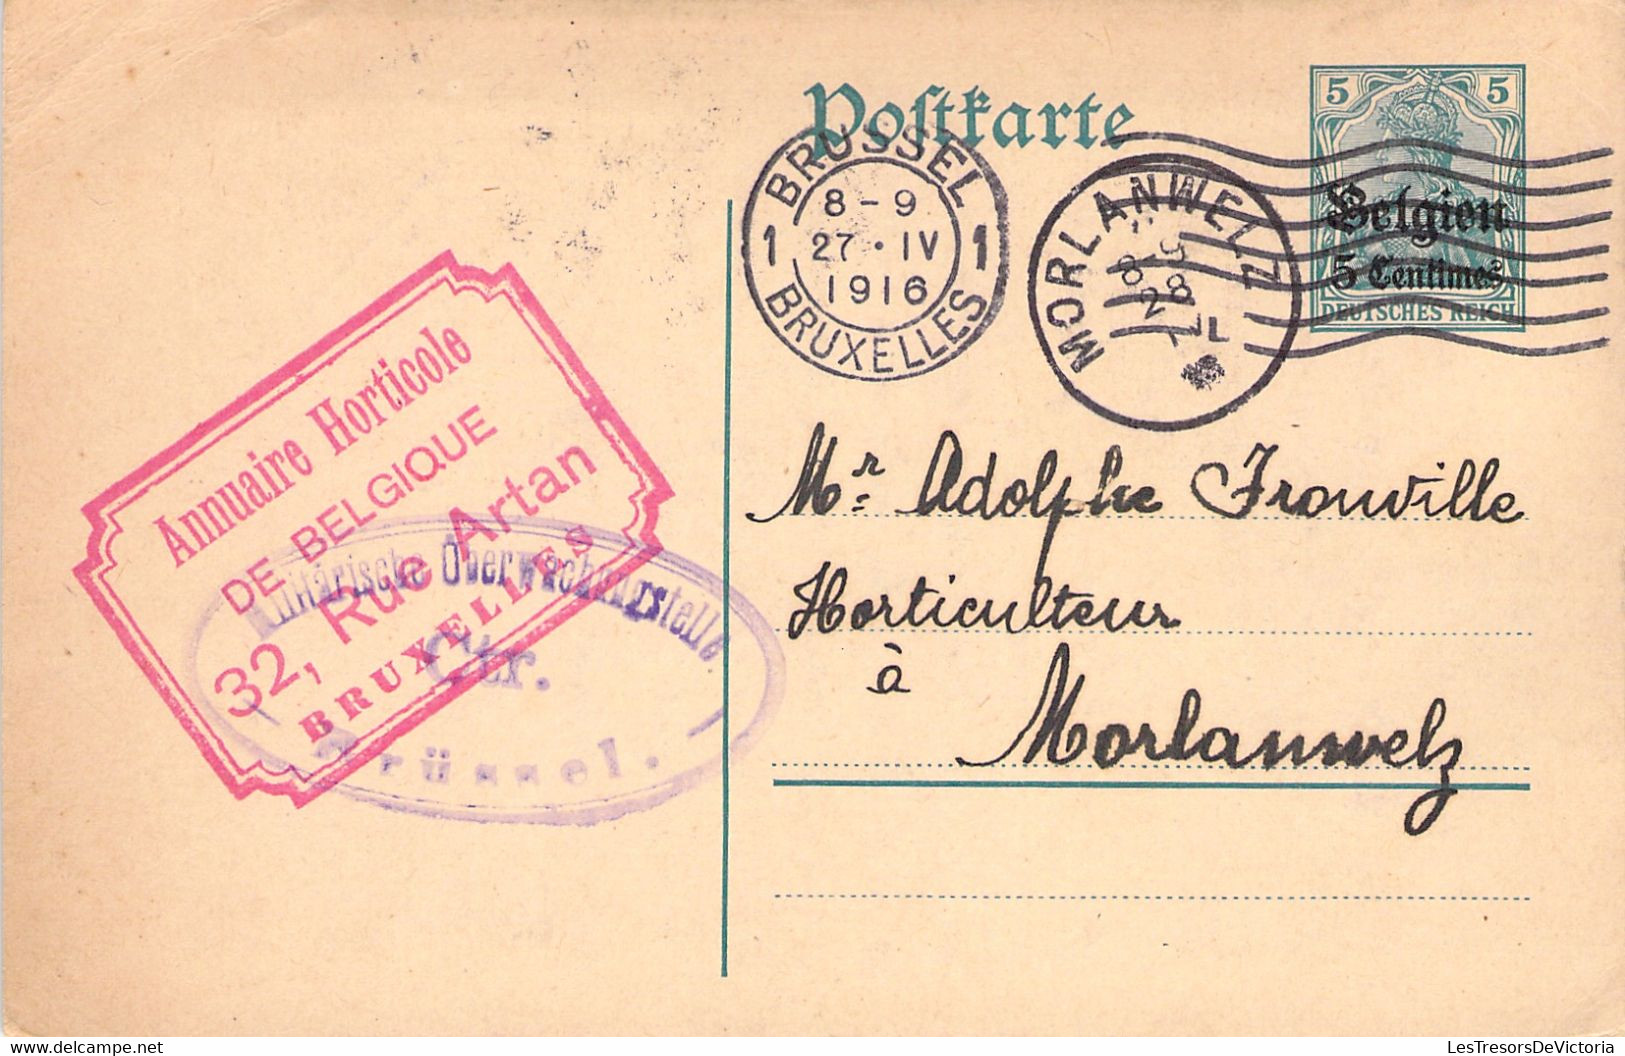 Lot X2 Carte Postale - Entier Postal - Timbre D'allemagne Avec Surcharge 5C - Litige Annuaire Horticole 1916 - Postcards 1909-1934